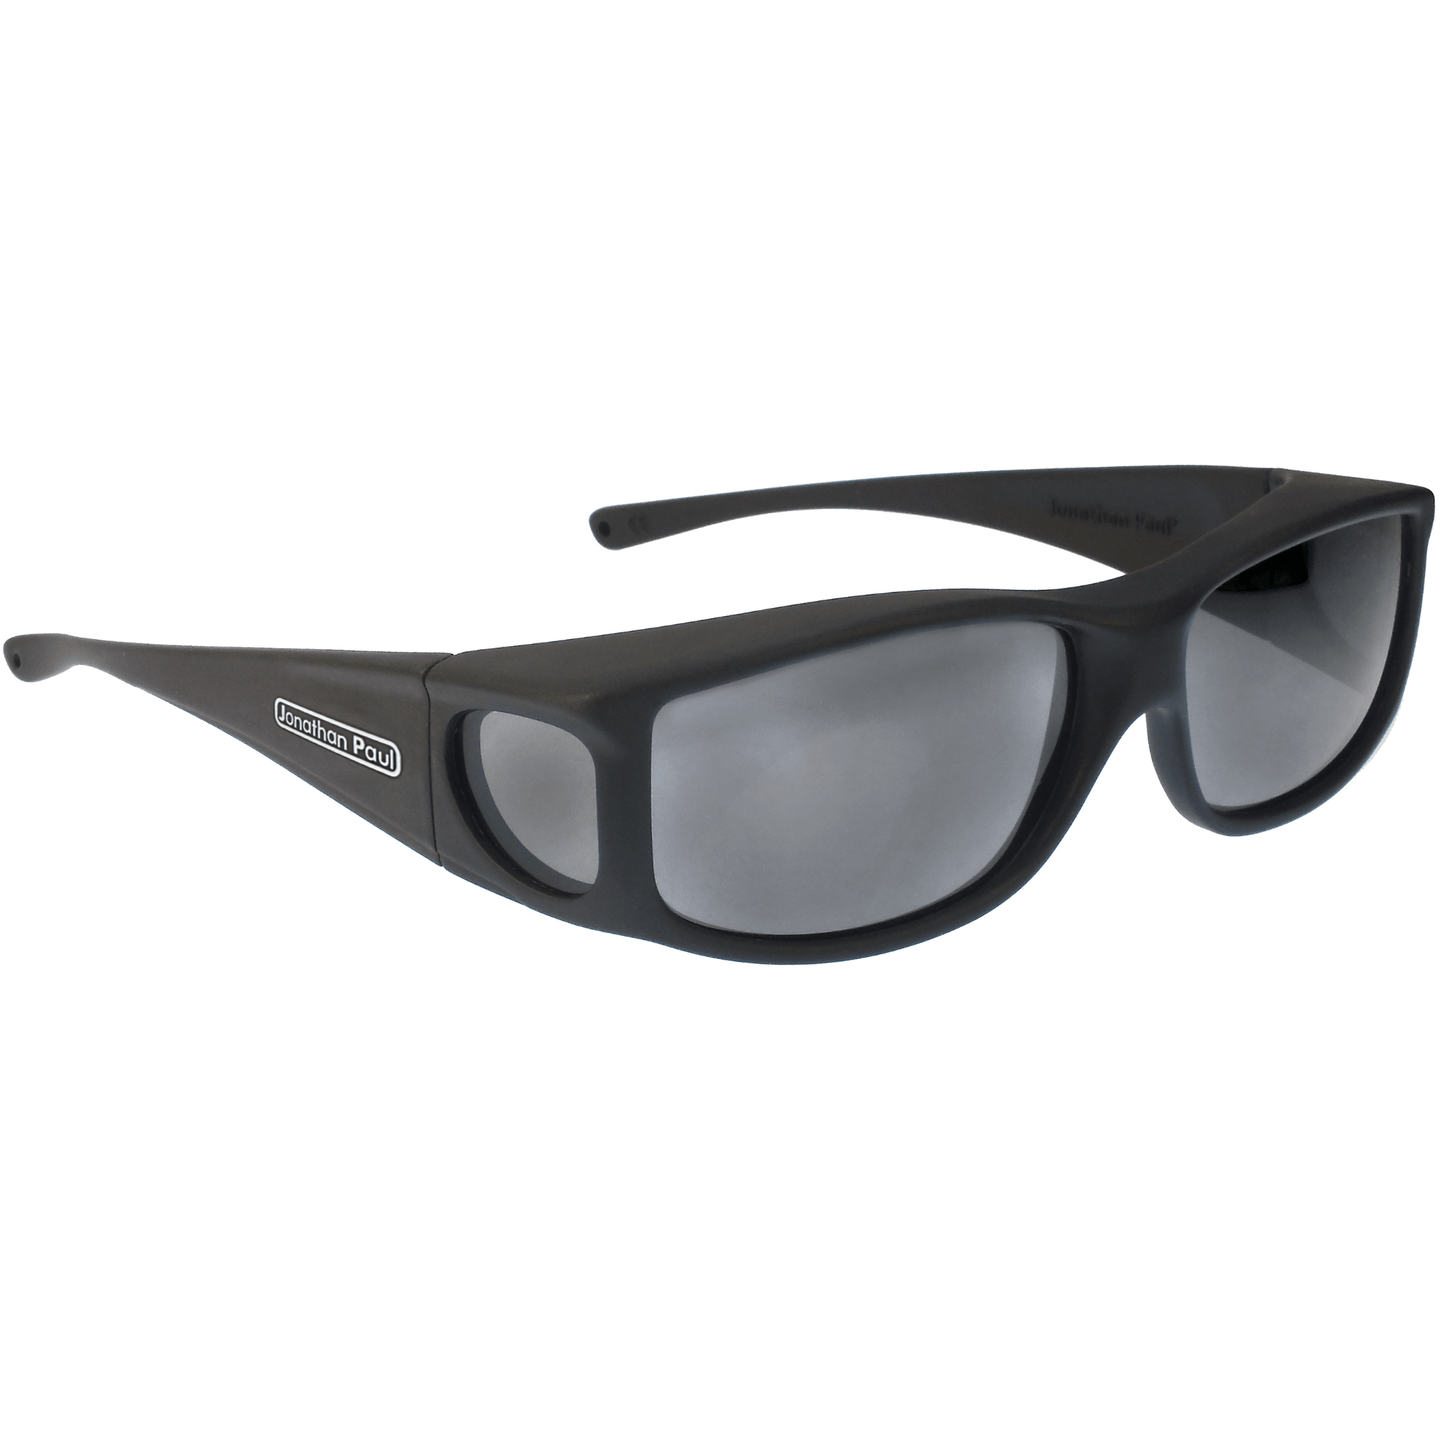 Fitover Sunglasses 'Jett' Matte Black - Grey Lens